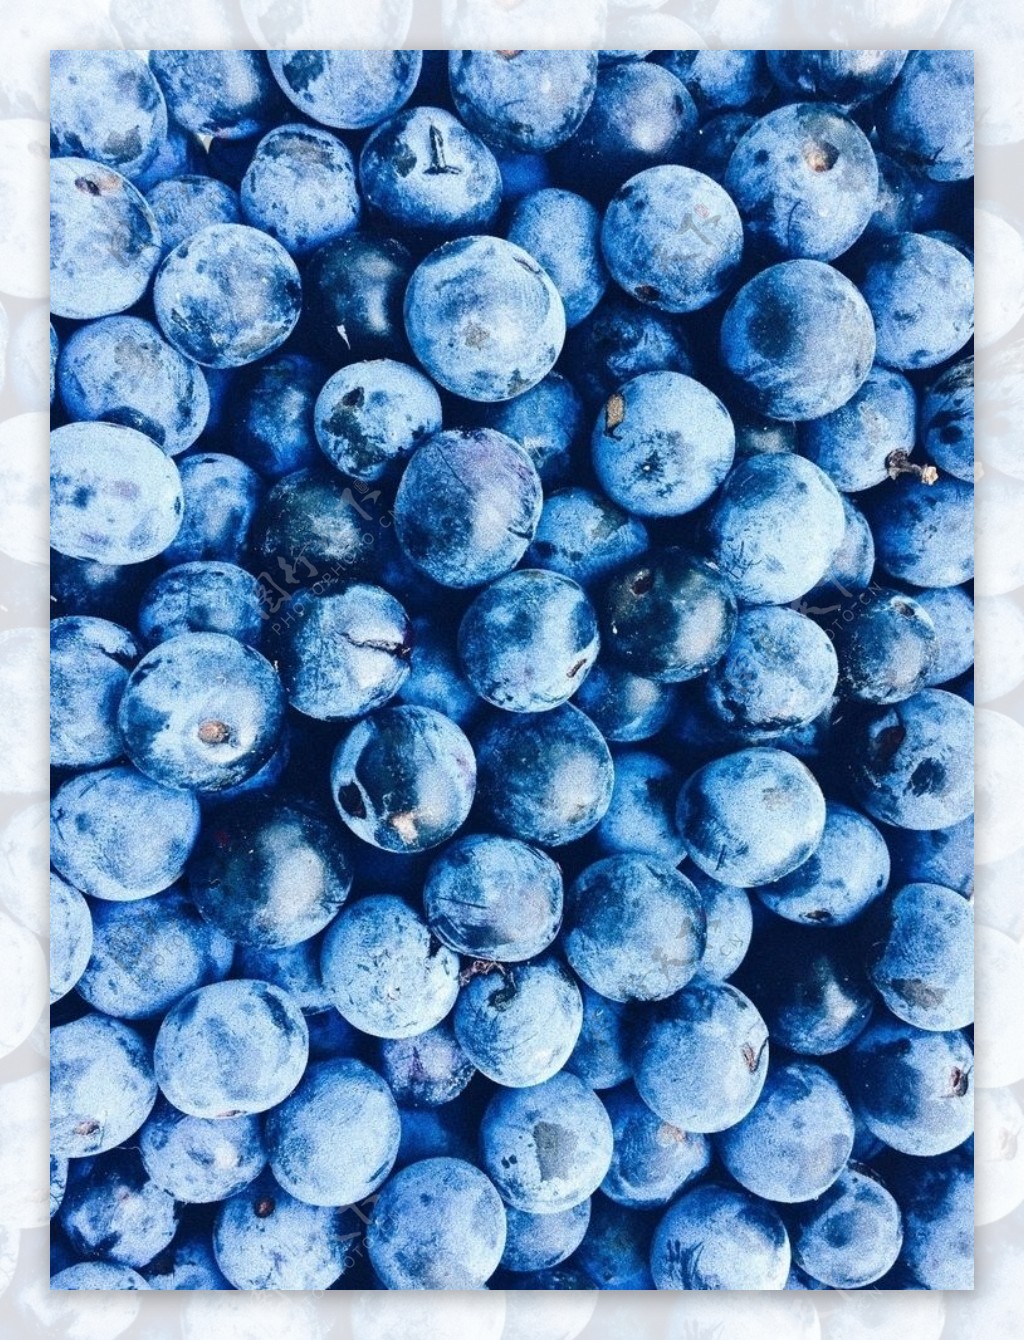 蓝莓组成的背景